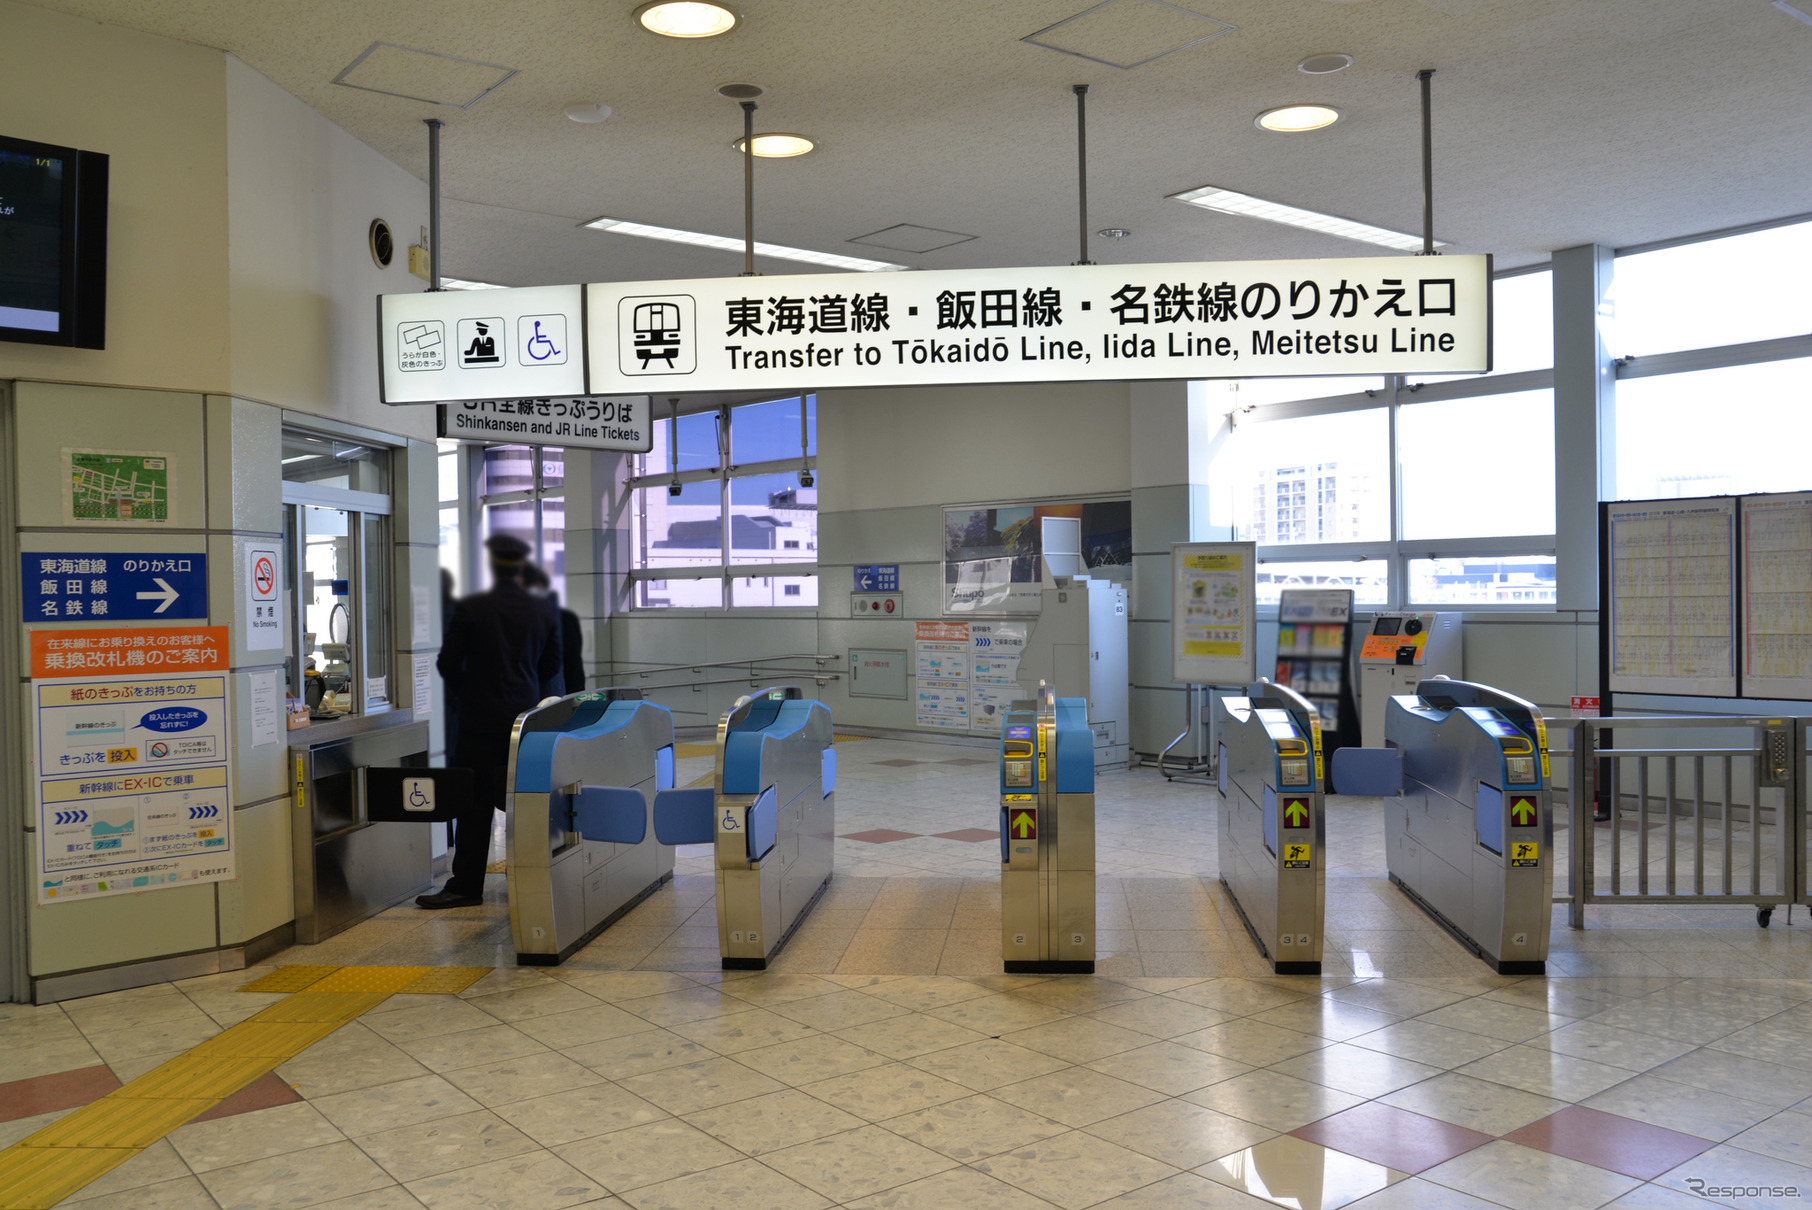 豊橋駅新幹線改札にある乗換え案内。同駅の在来線構内はJRと名鉄が共有しており、名鉄は3番ホームに発着している。